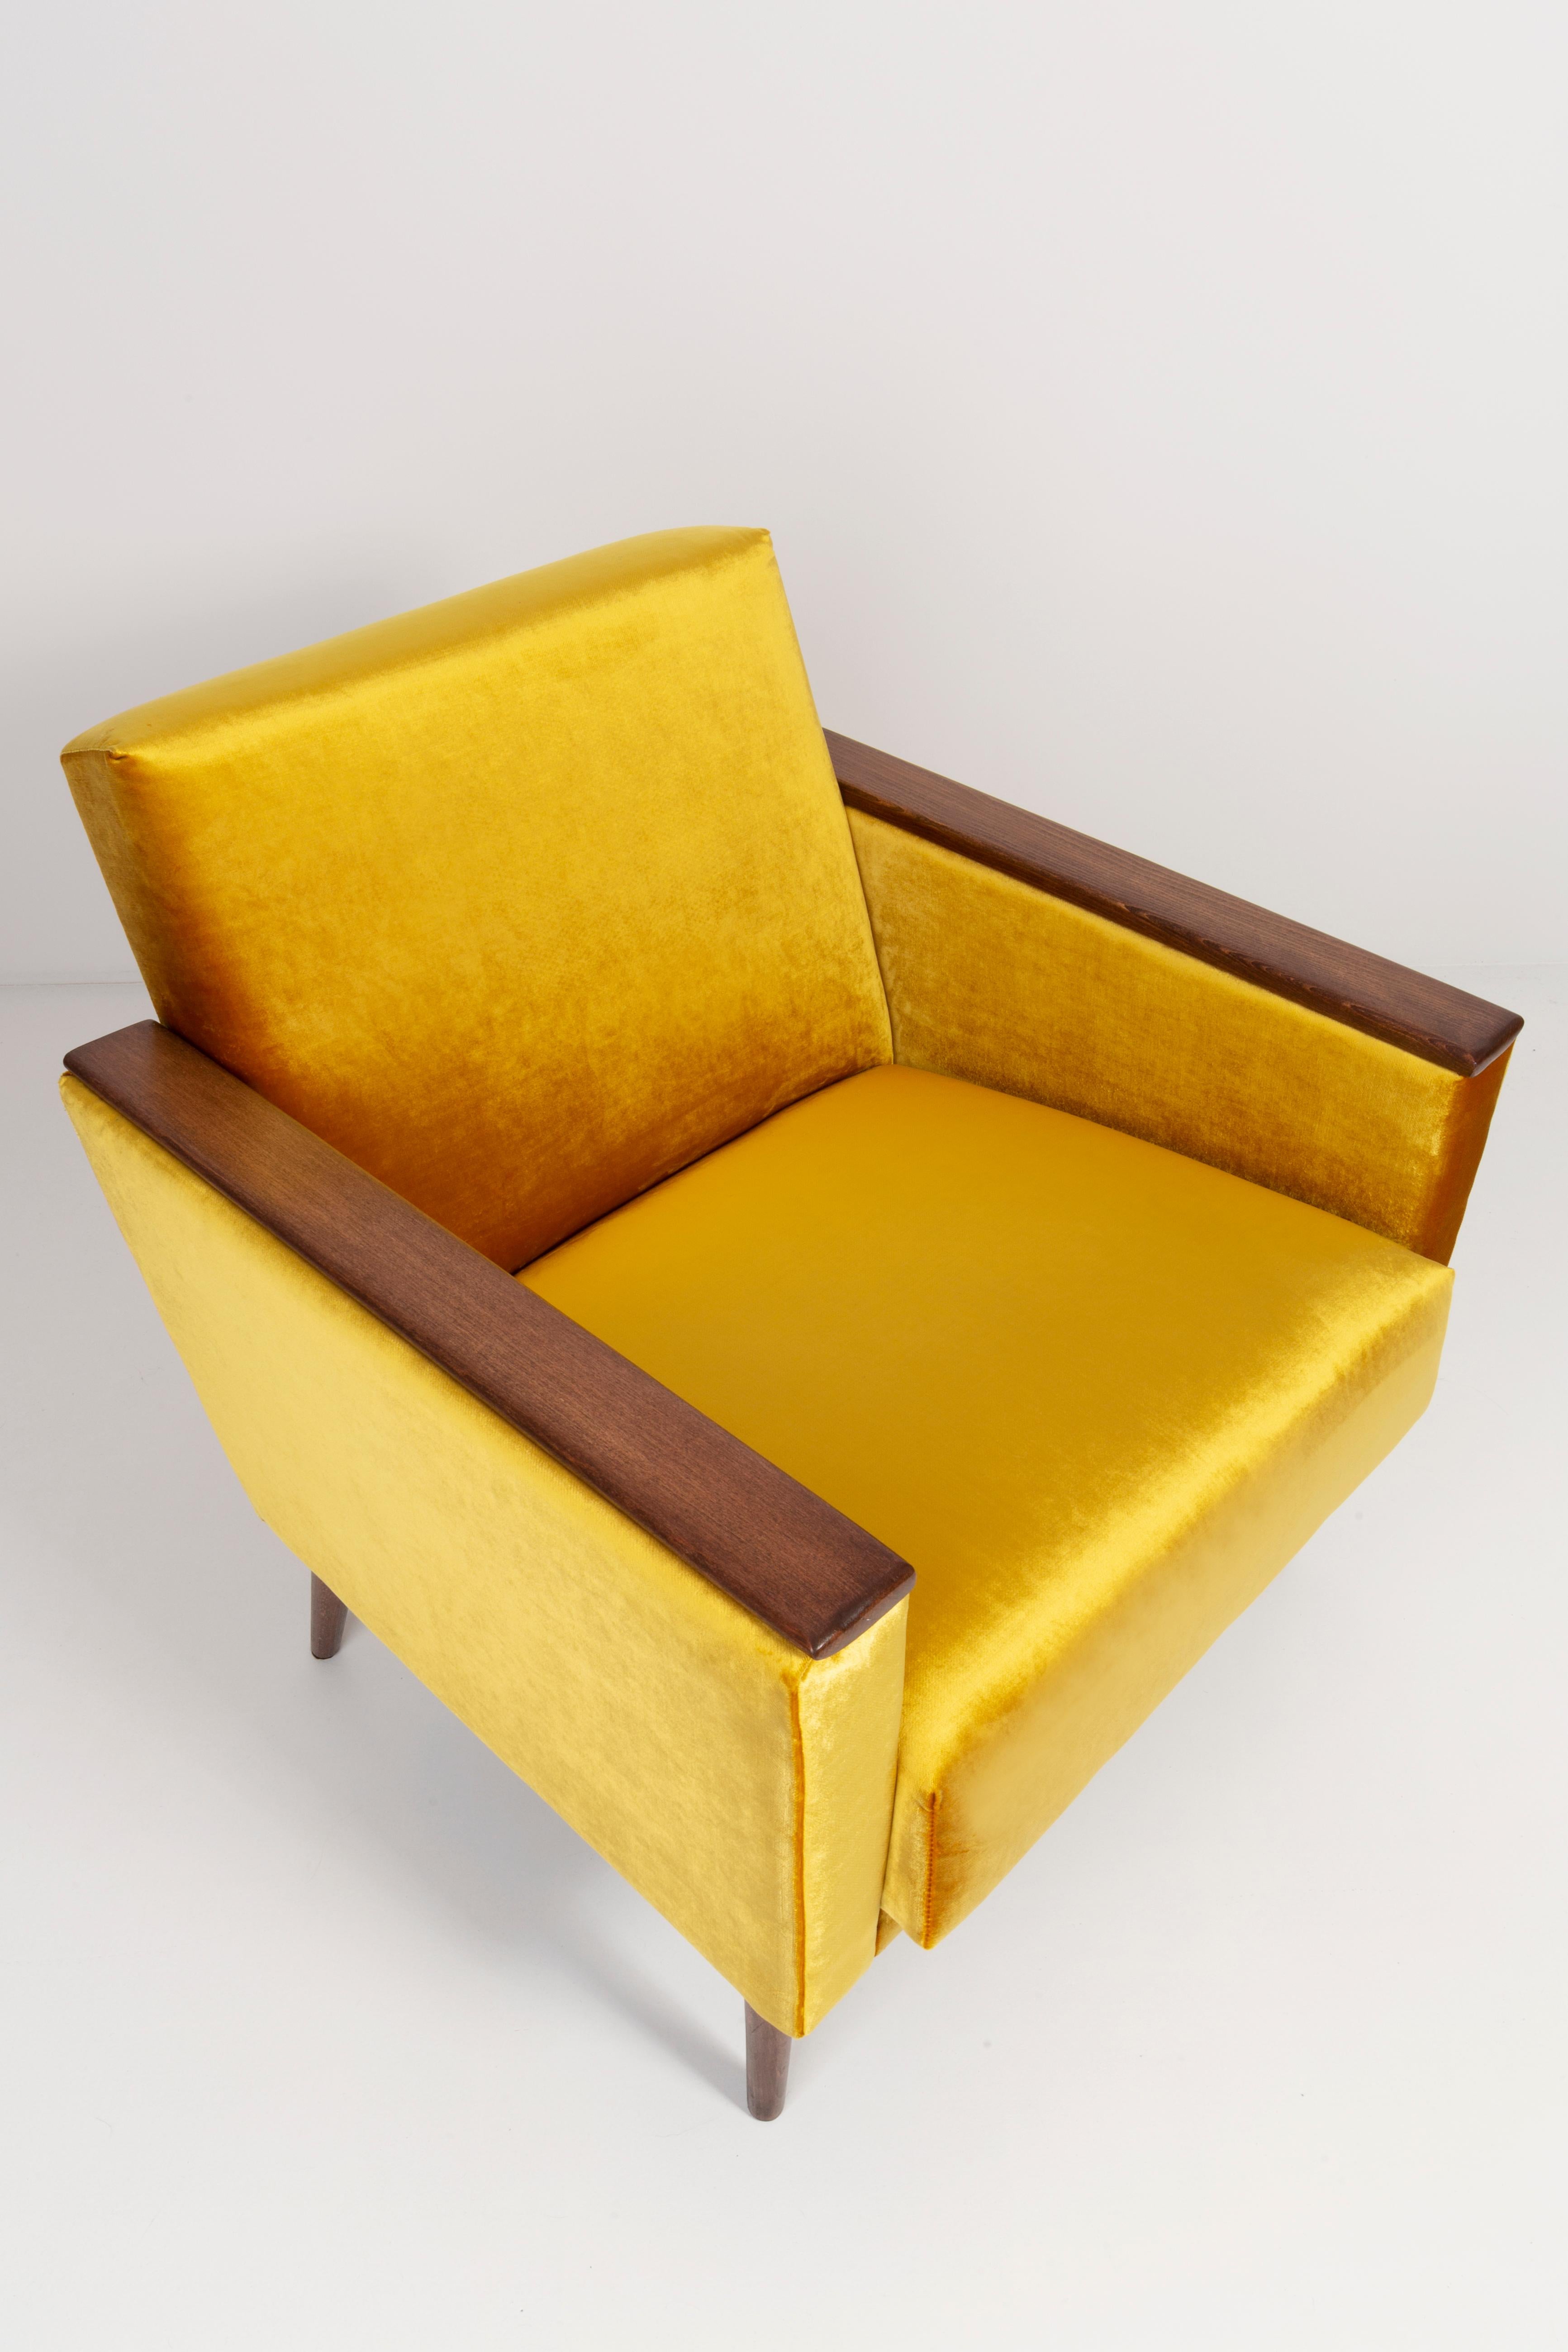 Deutscher Sessel, hergestellt in den 1960er Jahren in Berlin. Der Sessel ist nach einer gründlichen Renovierung der Polsterung und Tischlerei. Der Holzrahmen wird gründlich gereinigt und mit einem seidenmatten Lack in der Farbe einer Nuss überzogen.